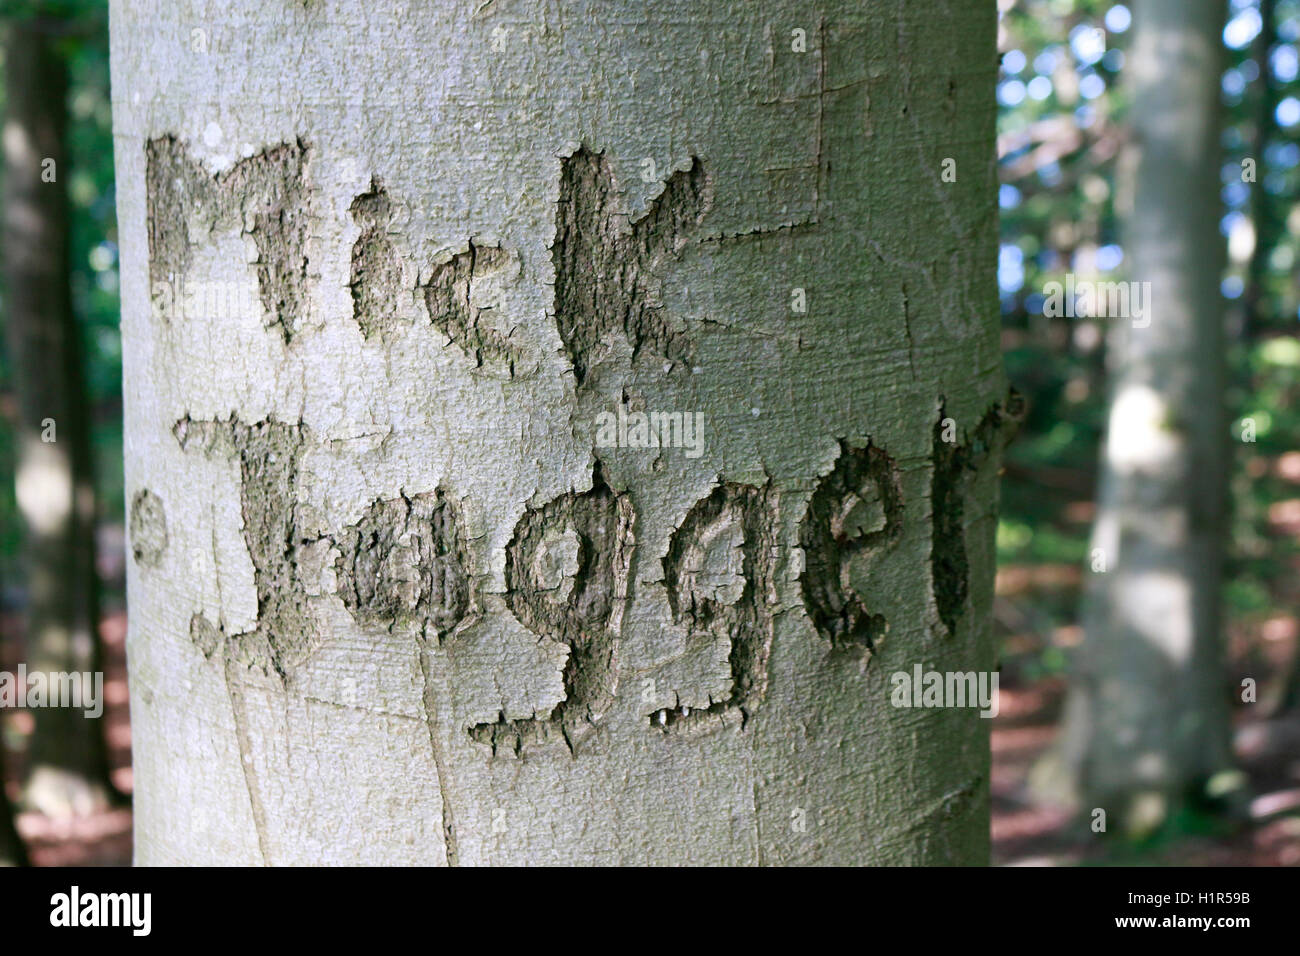 'Mick Jagger' in Baum eingeritzt, Ruegen. Foto Stock